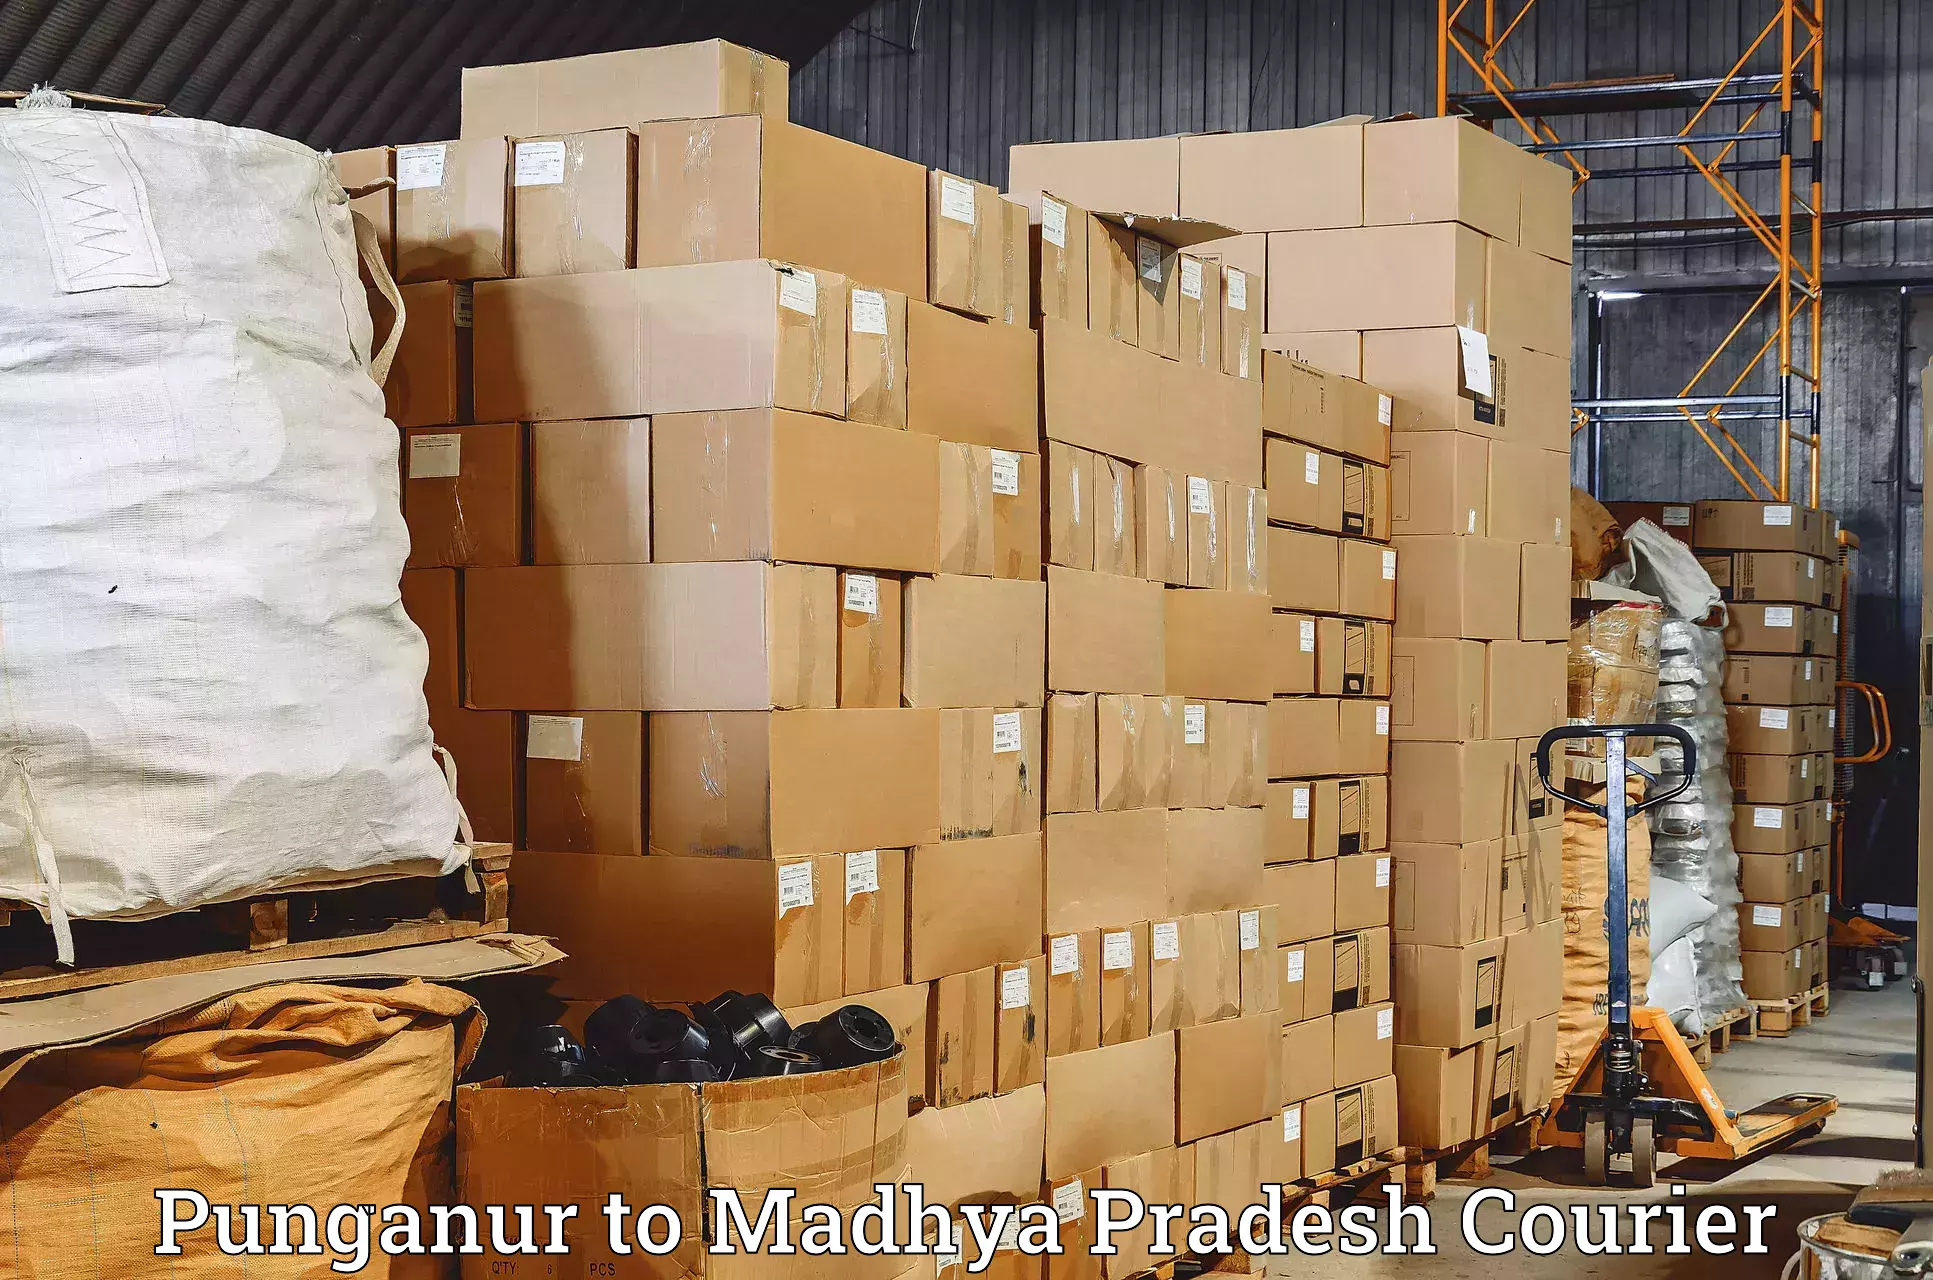 Customer-focused courier Punganur to Sagar